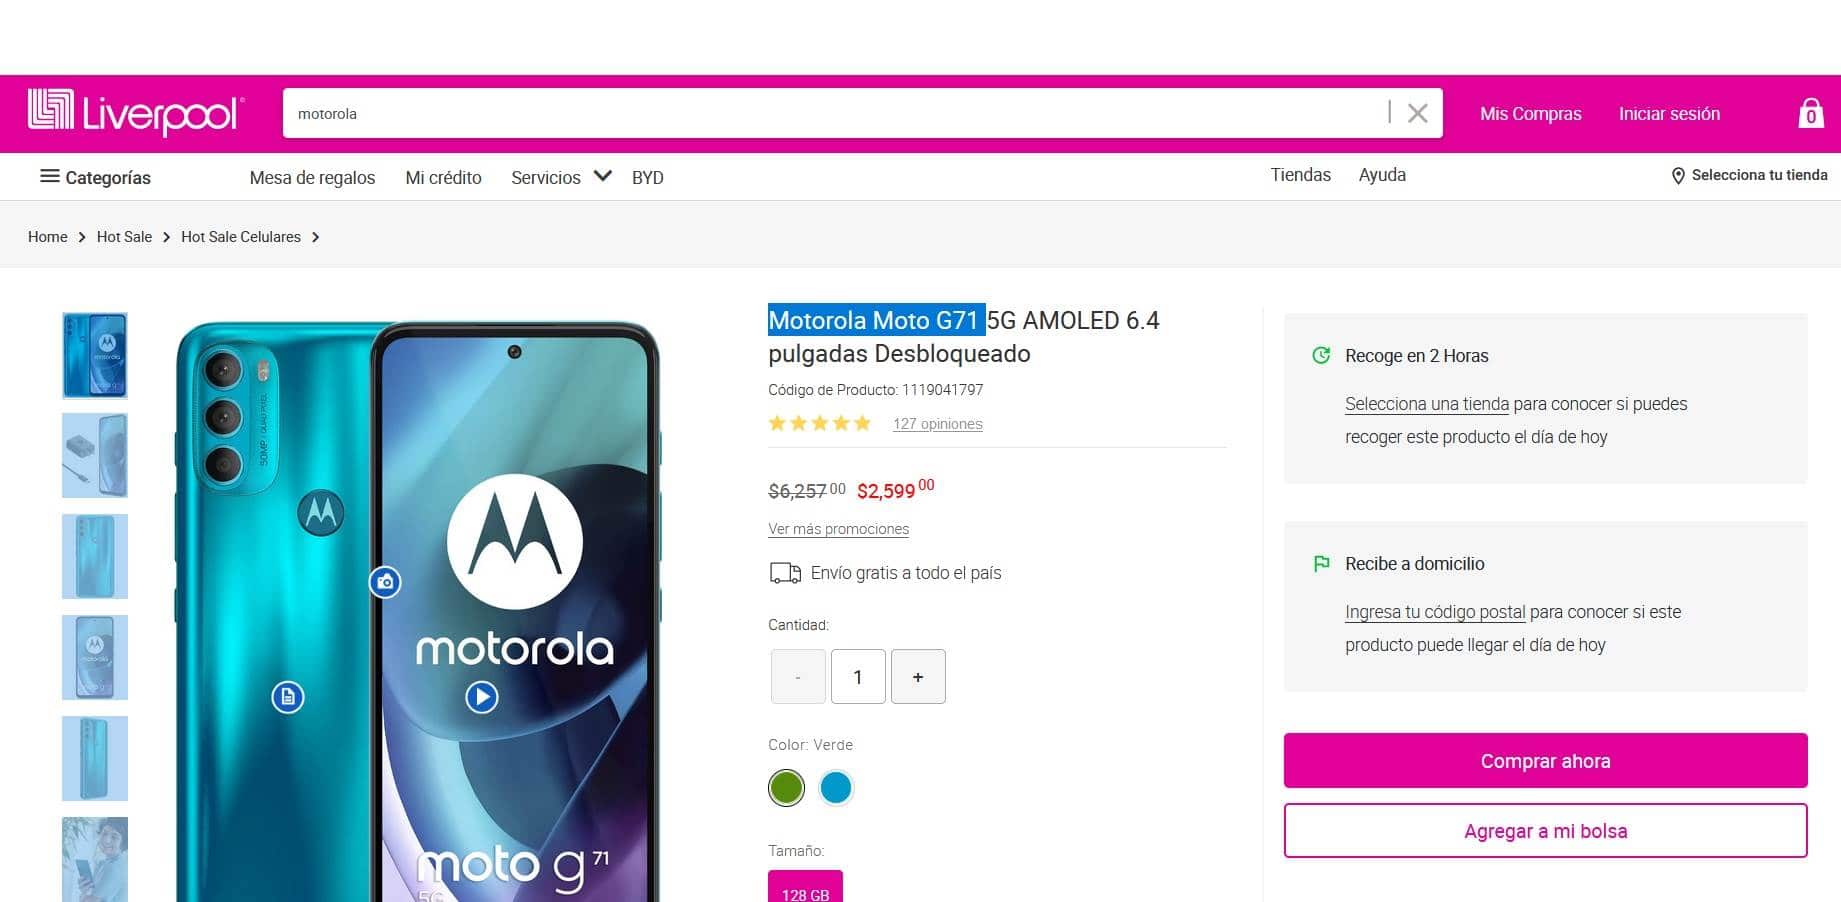 Motorola Moto G71 precio y camara principal